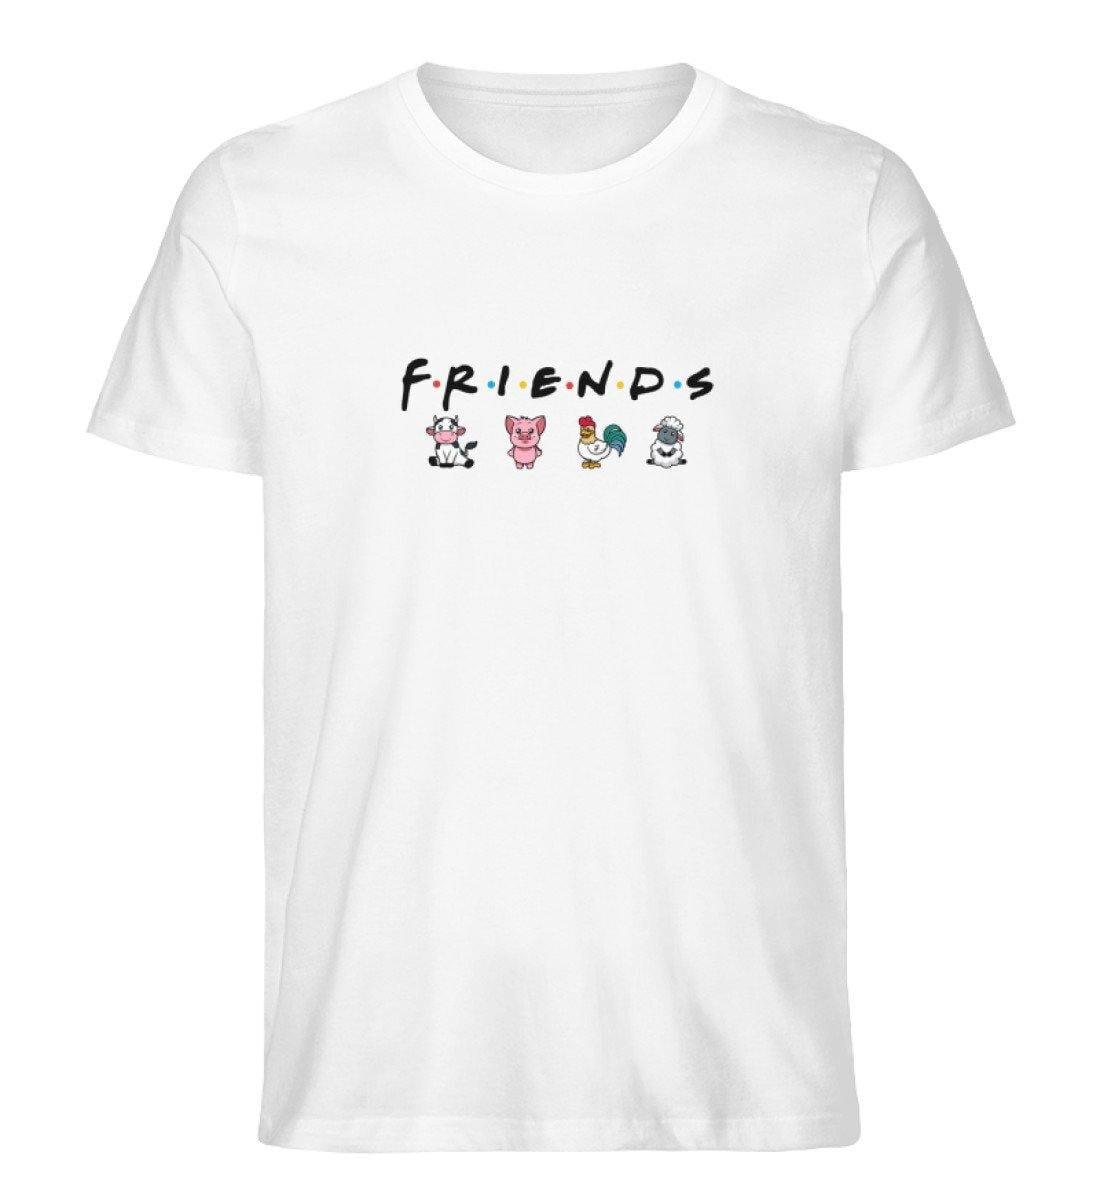 Friends - Unisex Organic Shirt Rocker T-Shirt ST/ST Shirtee Weiß S 